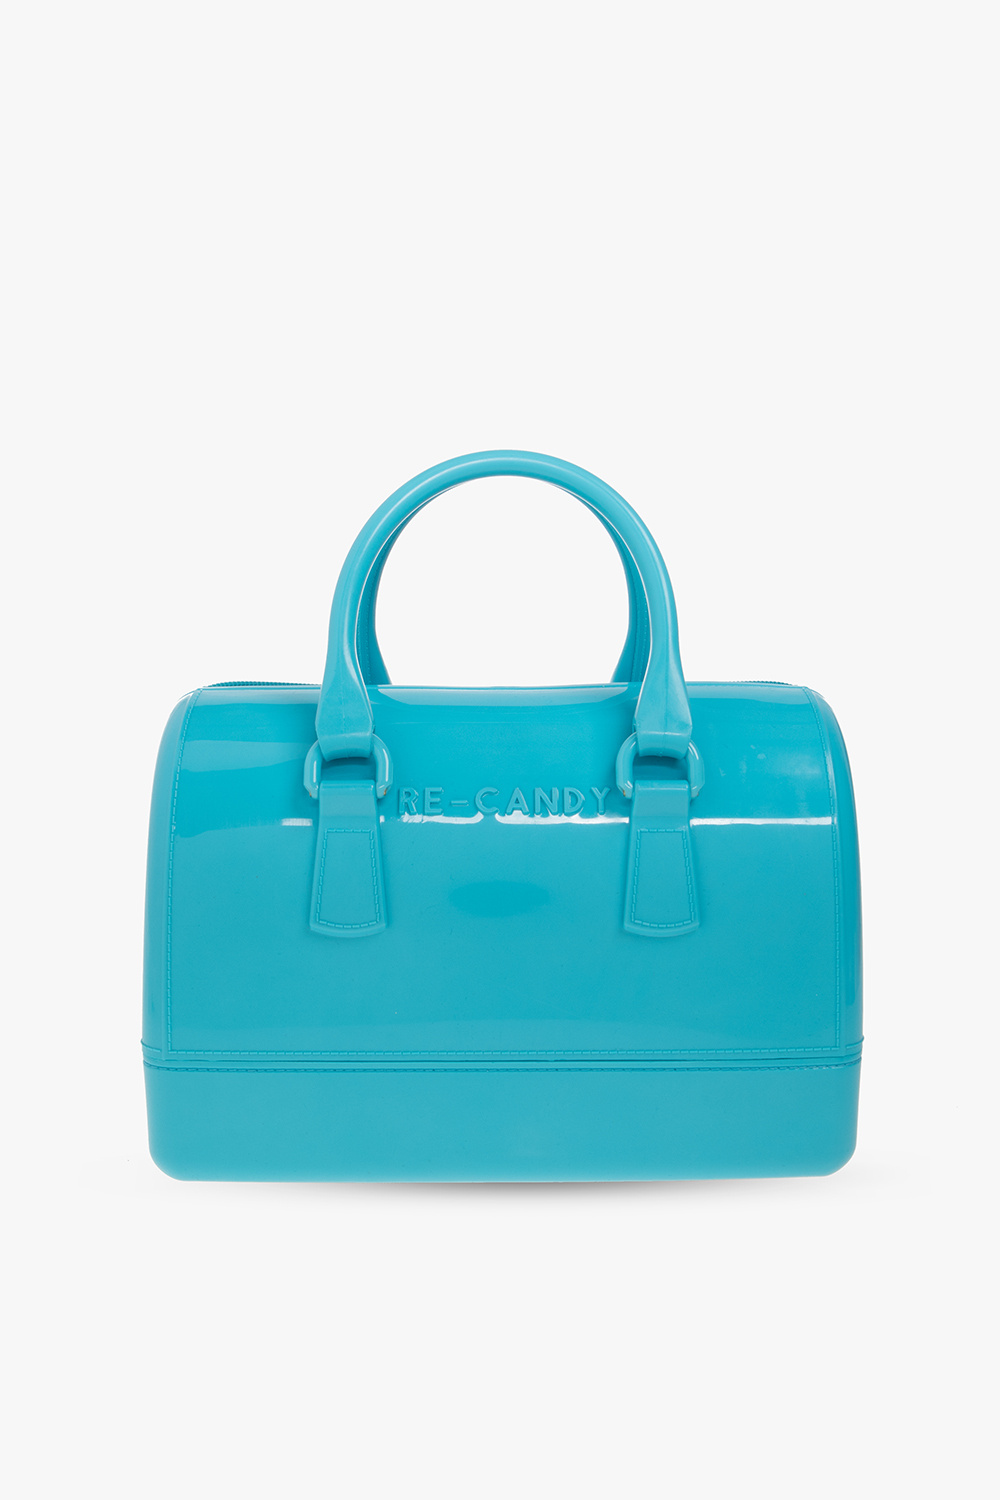 Furla ‘Candy’ handbag